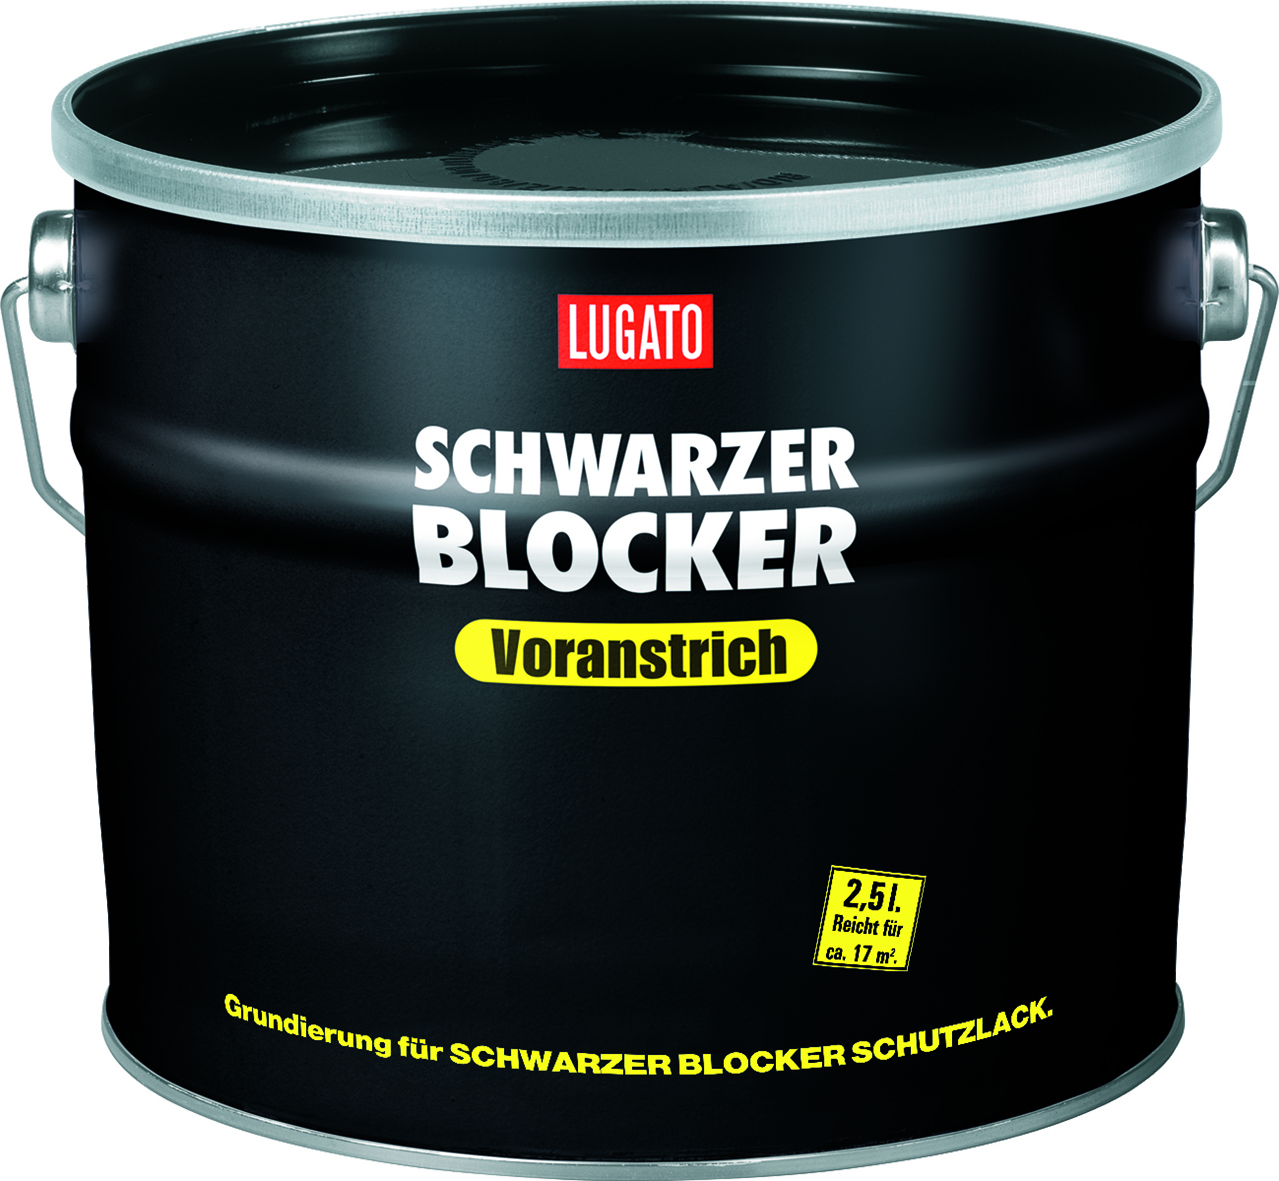 Lugato Schwarzer Blocker Voranstrich 2,5 L